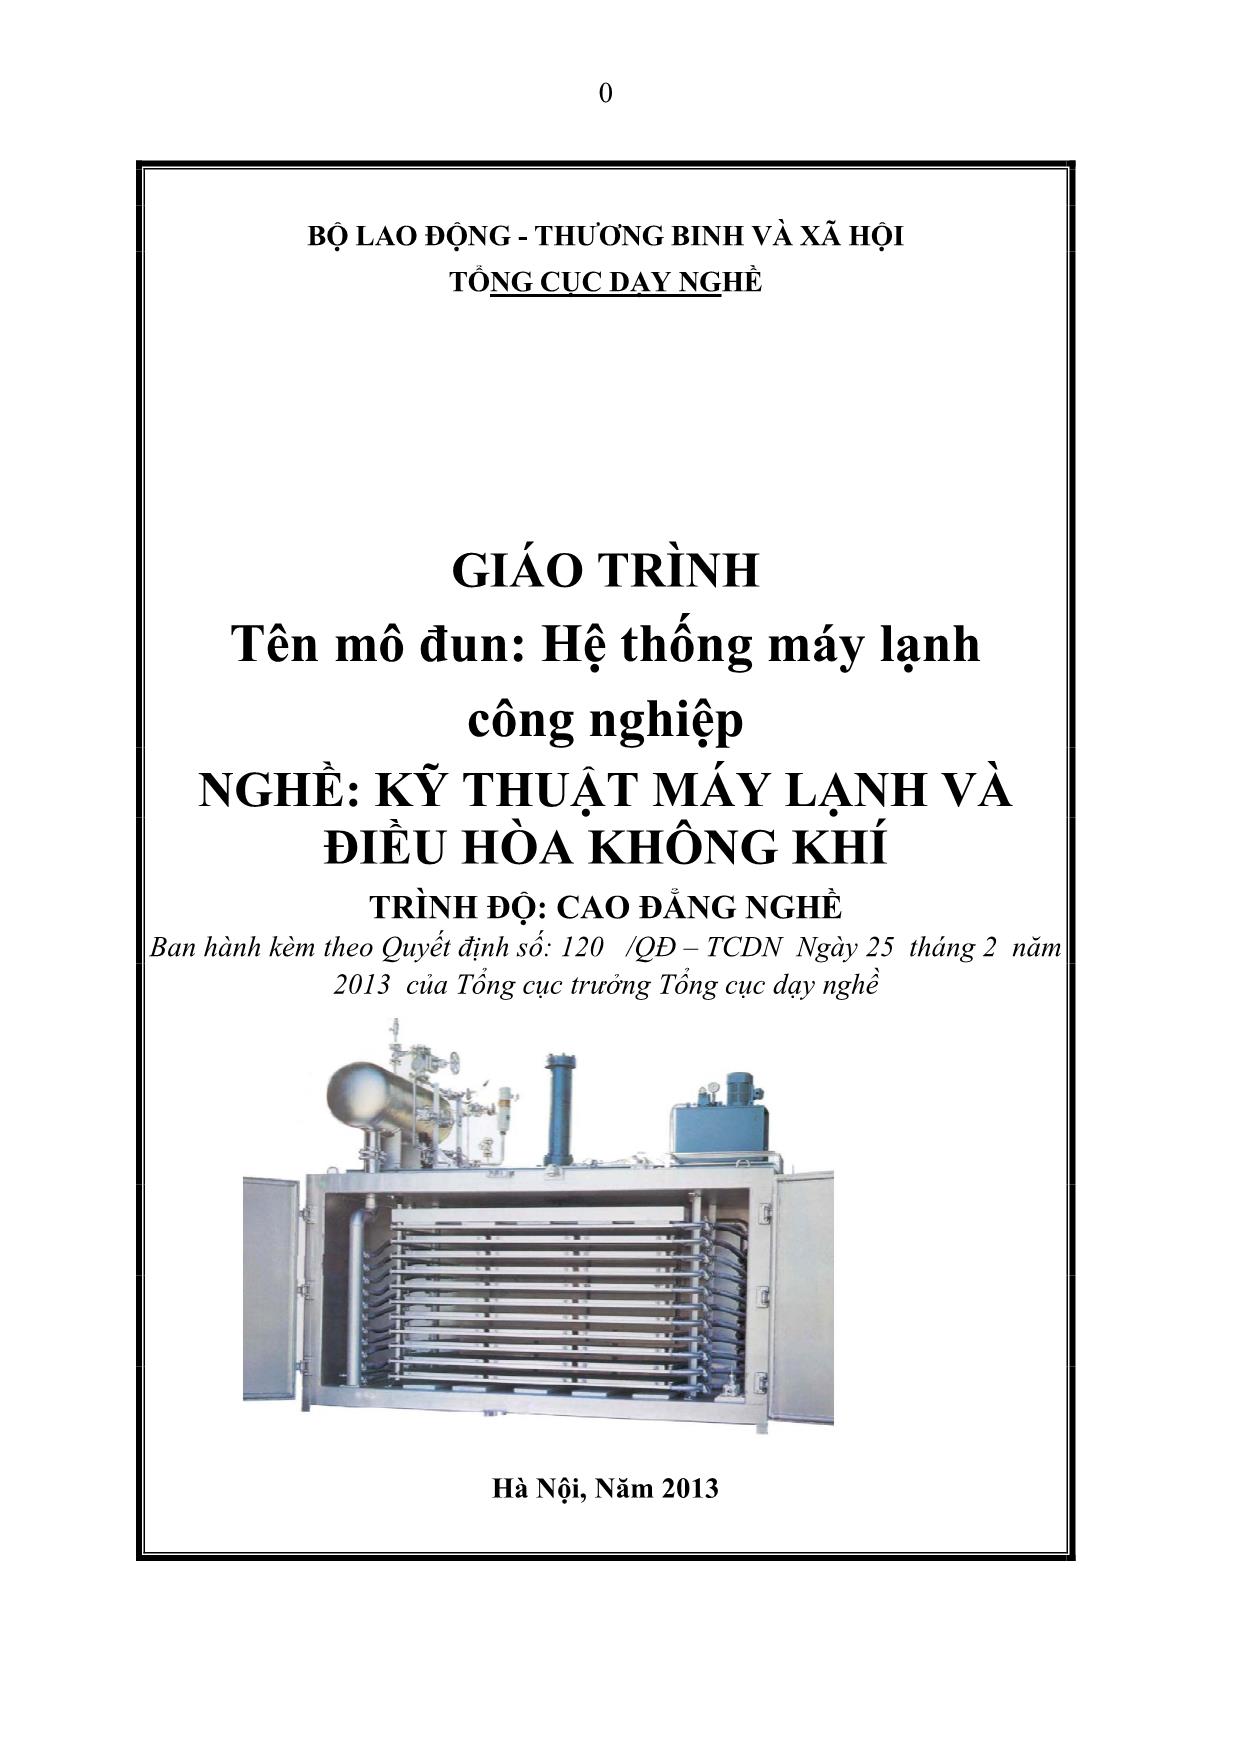 Giáo trình Mô đun Hệ thống máy lạnh công nghiệp - Kỹ thuật máy lạnh và điều hòa không khí trang 1